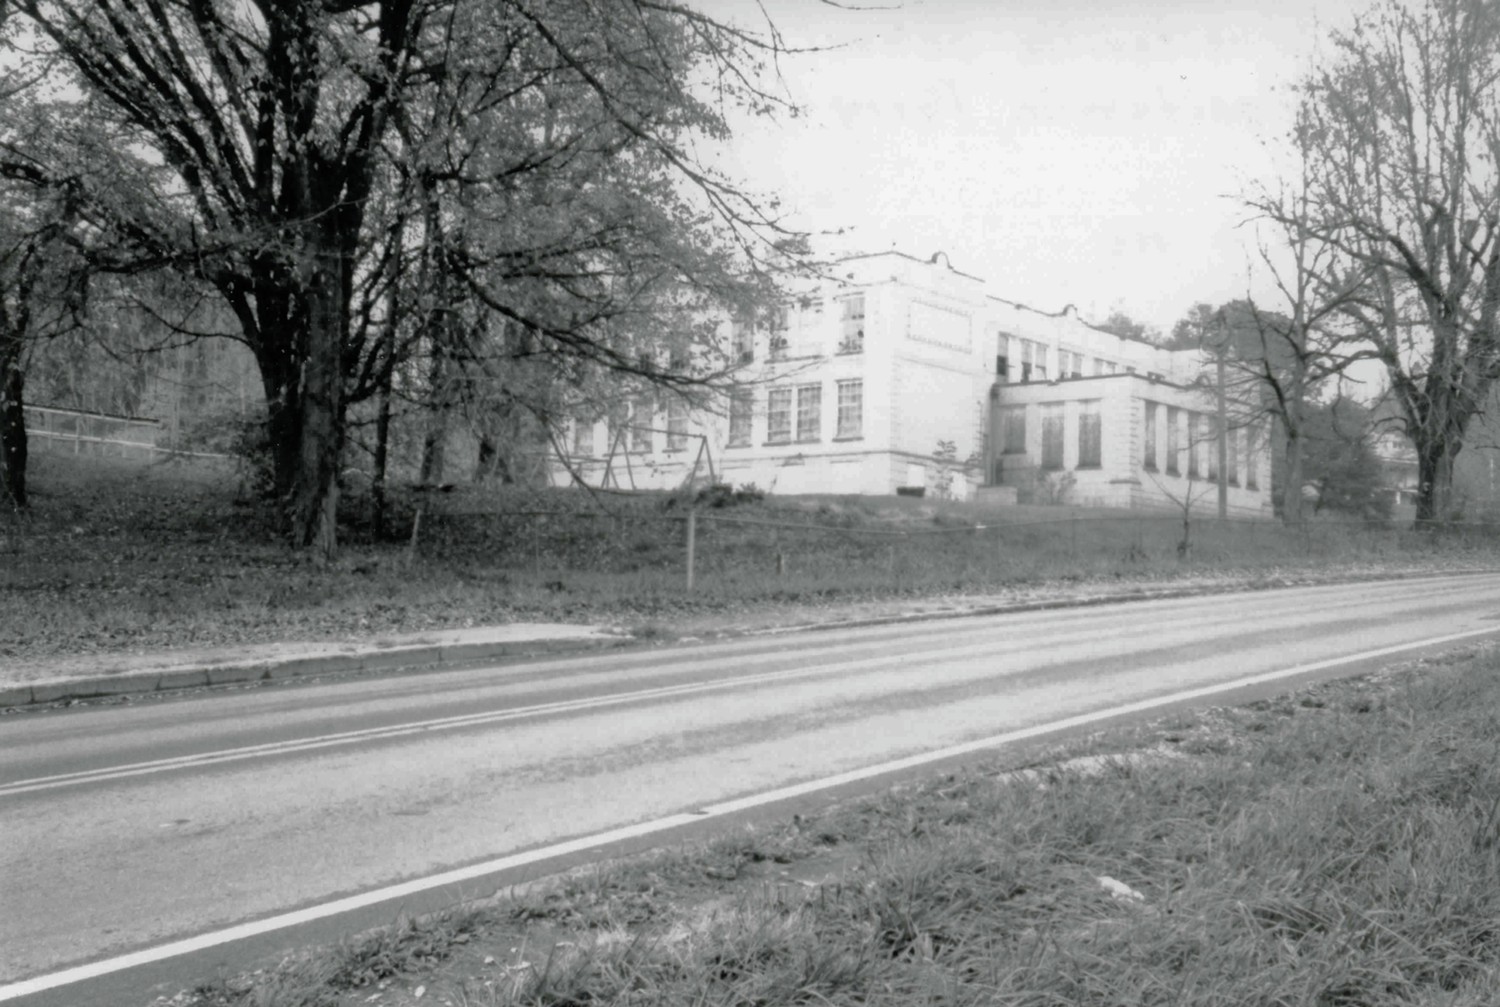 New Straitsville School, New Straitsville Ohio Looking northeast (2000)